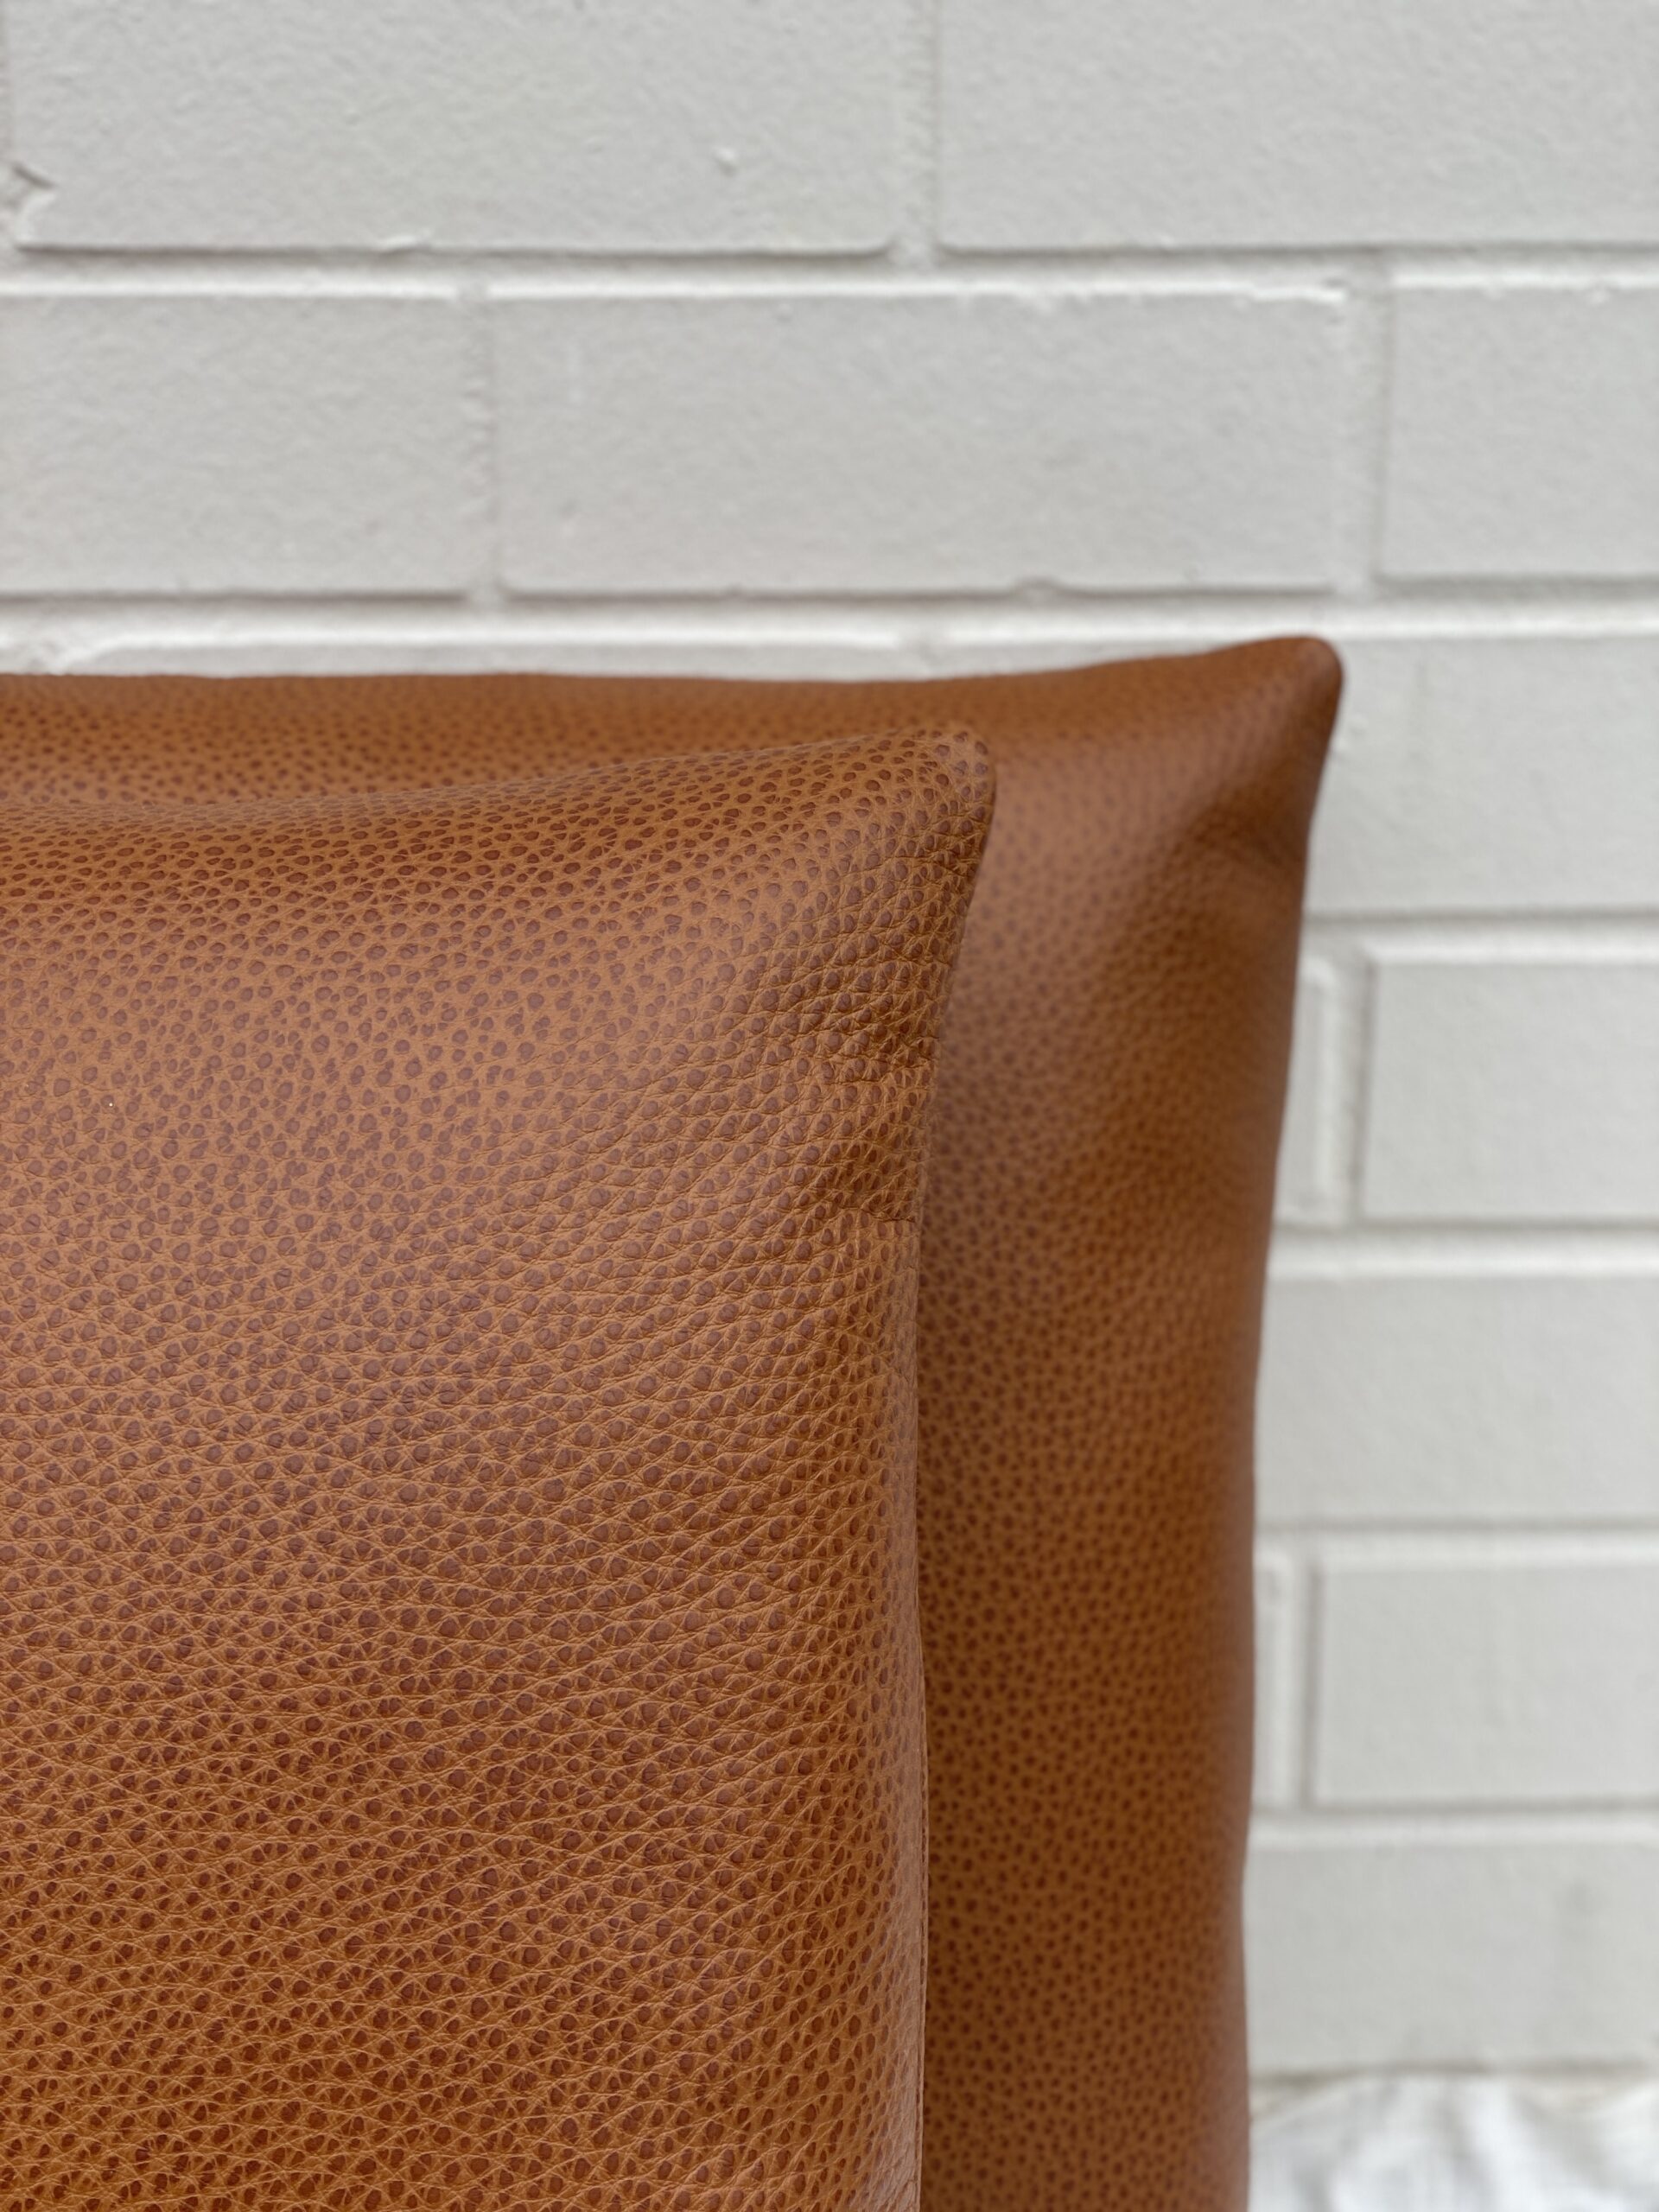 Edelman Leather Pillows